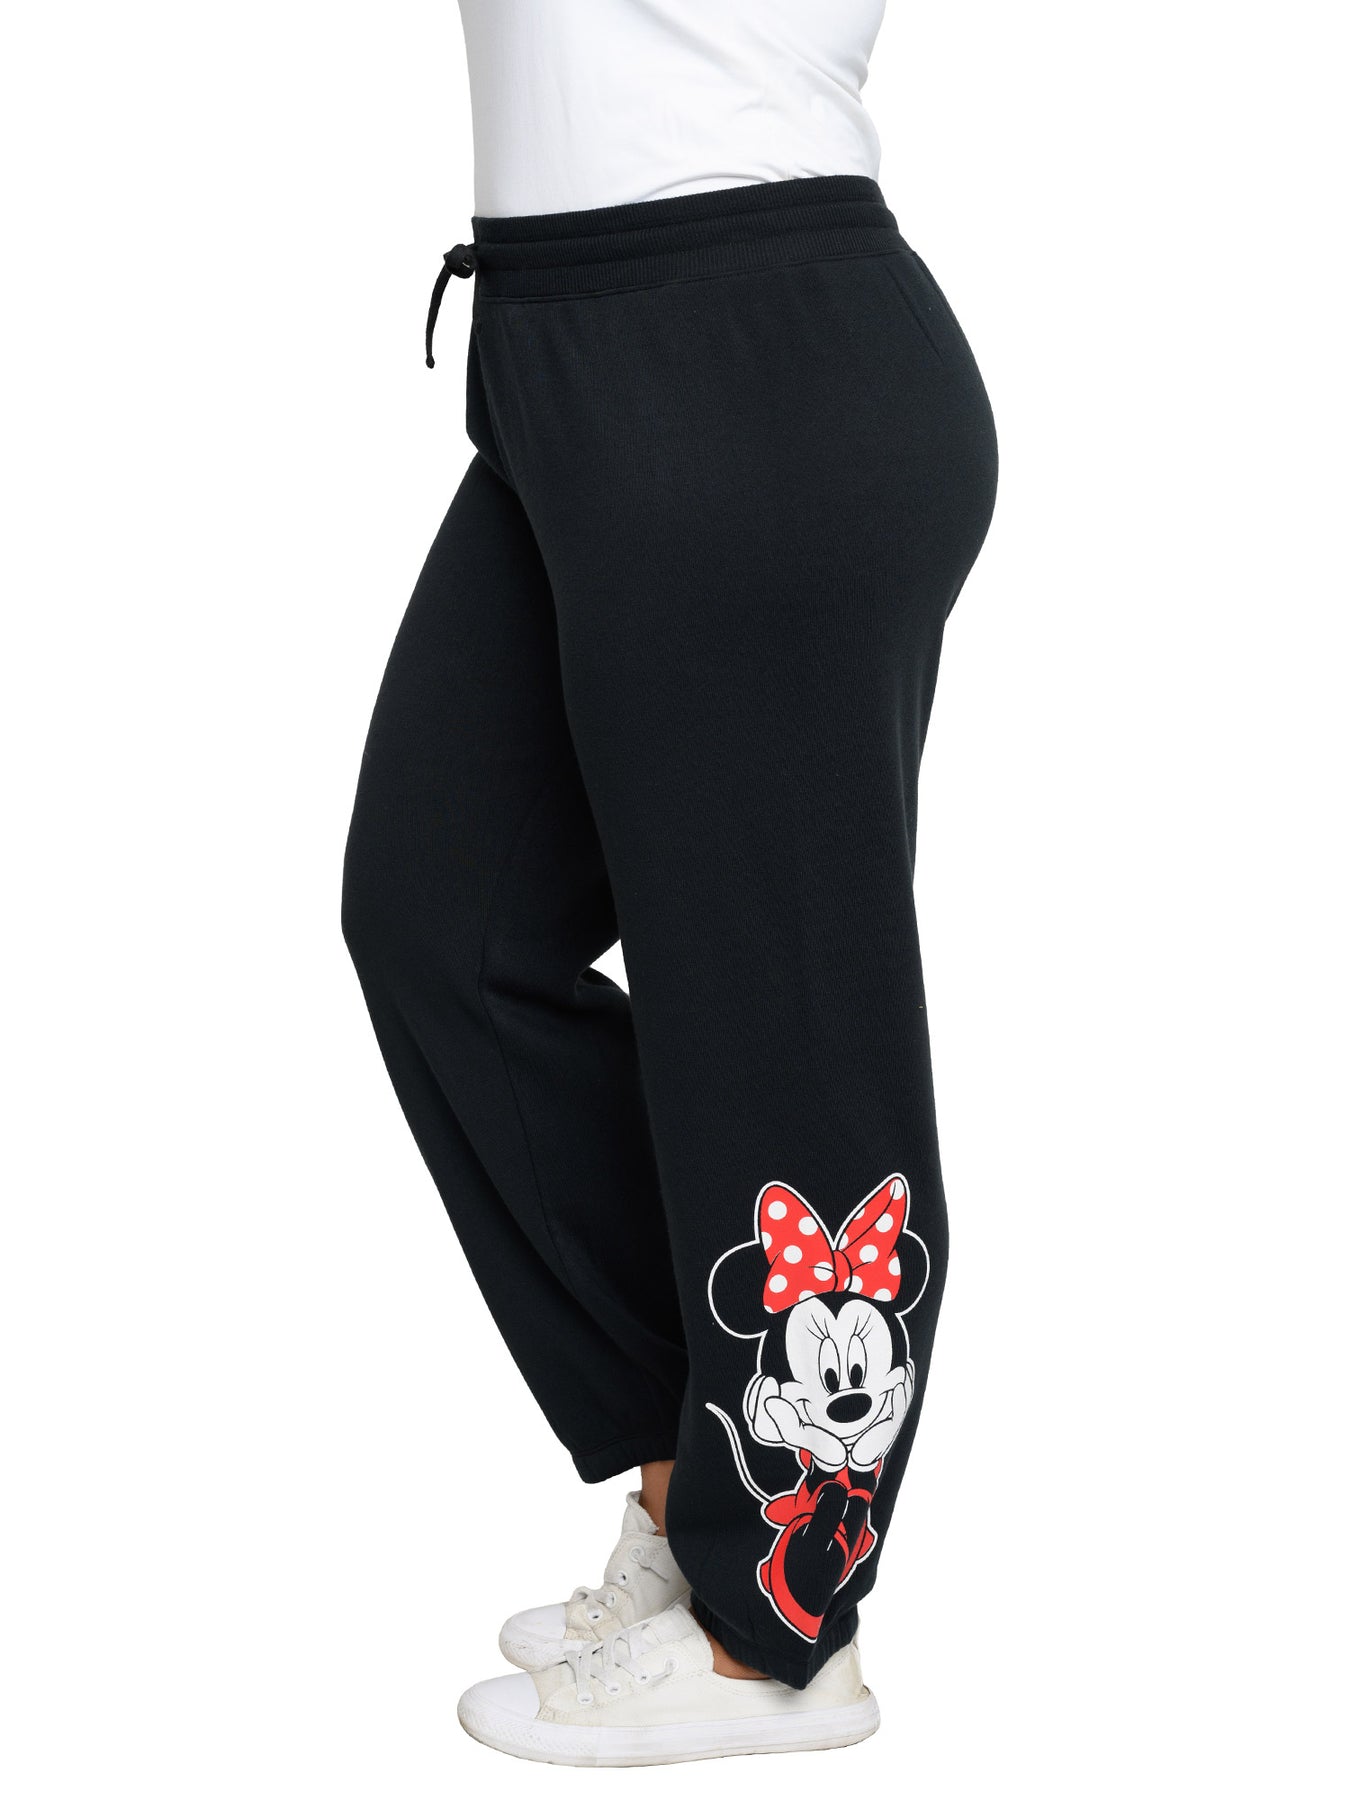 Disney Minnie Mouse Women's Drawstring Sweatpants Black Pants Size XG  (15/17)